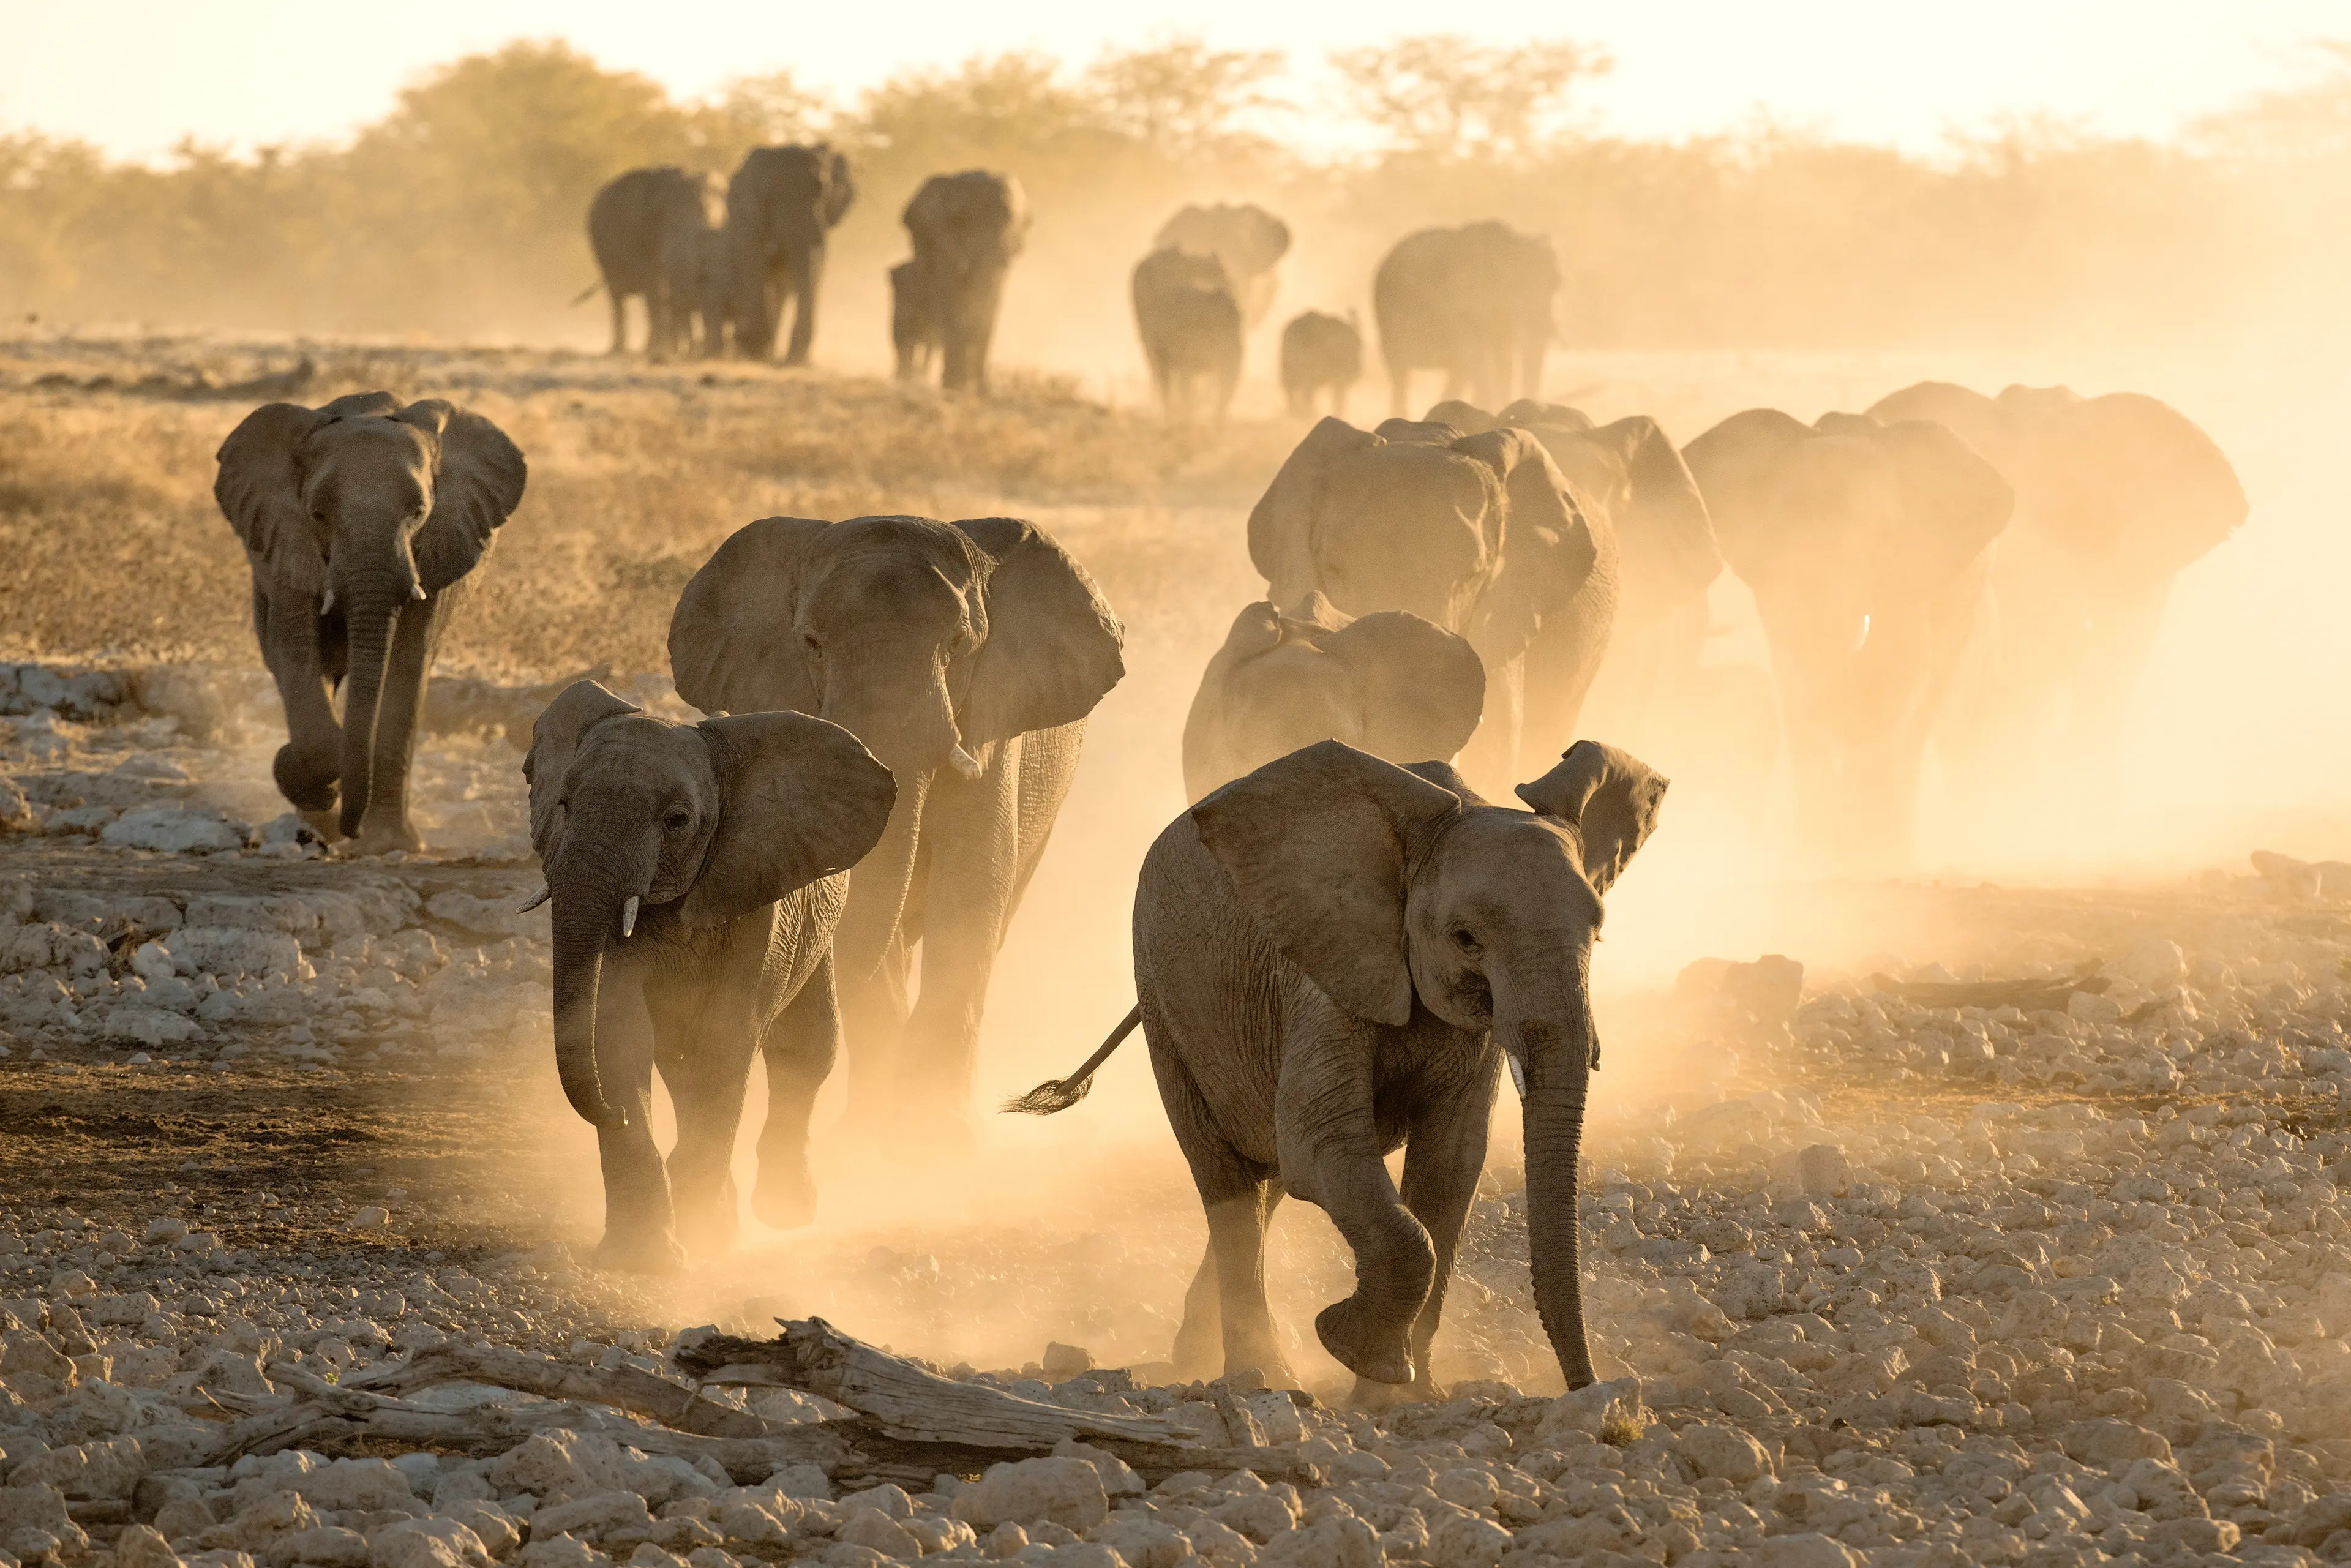 Elephant herd in the Namib desert